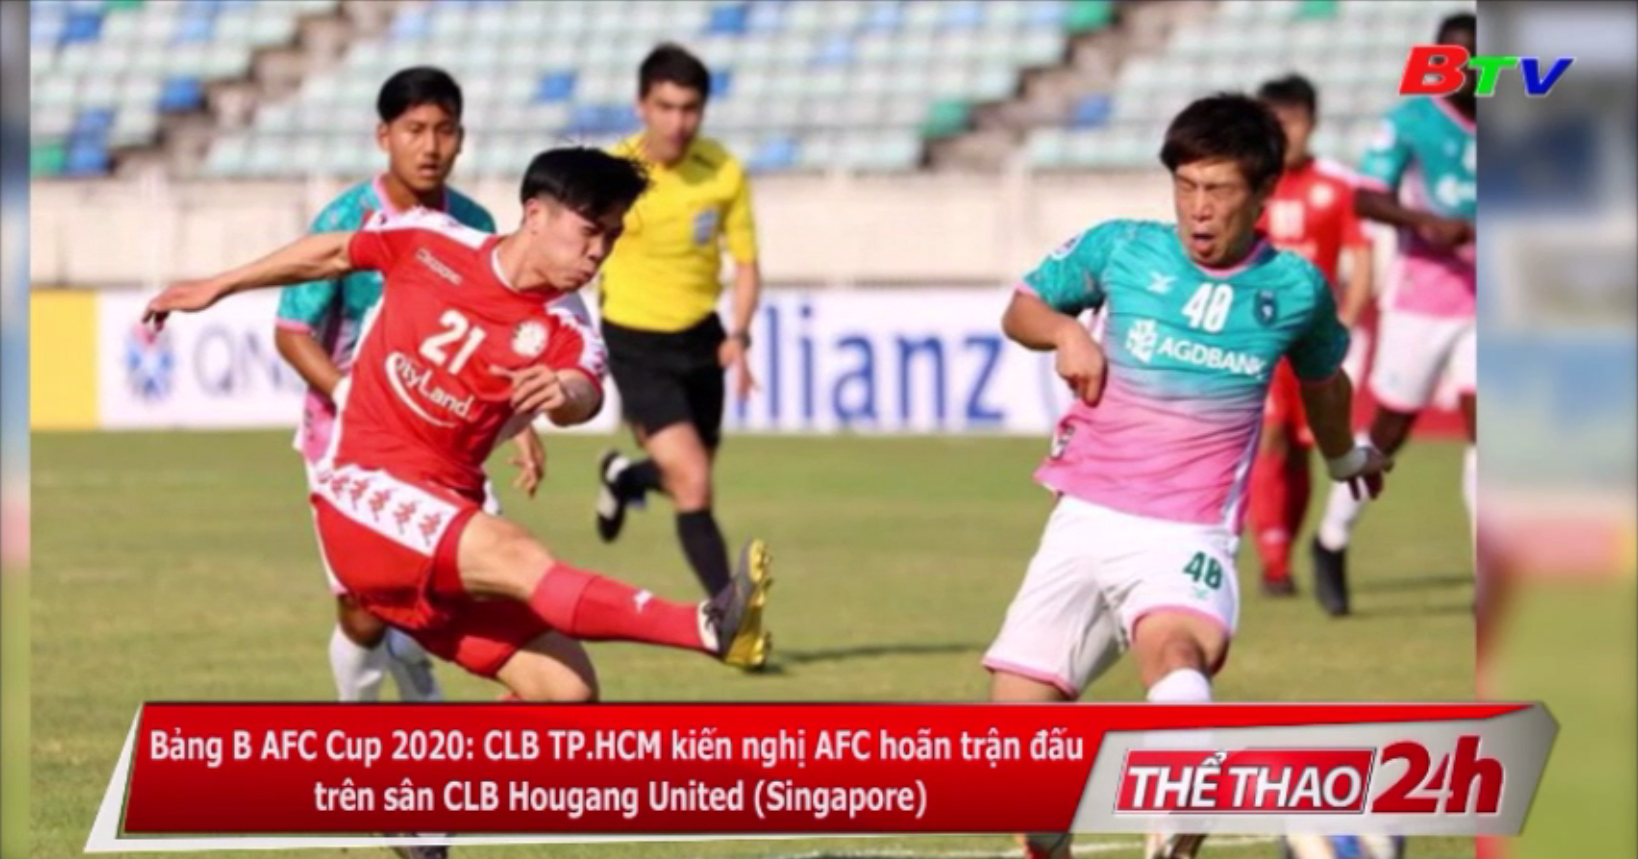 CLB TP.HCM kiến nghị AFC hoãn trận đấu trên sân CLB Hougang United (Singapore) tại Bảng B AFC Cup 2020